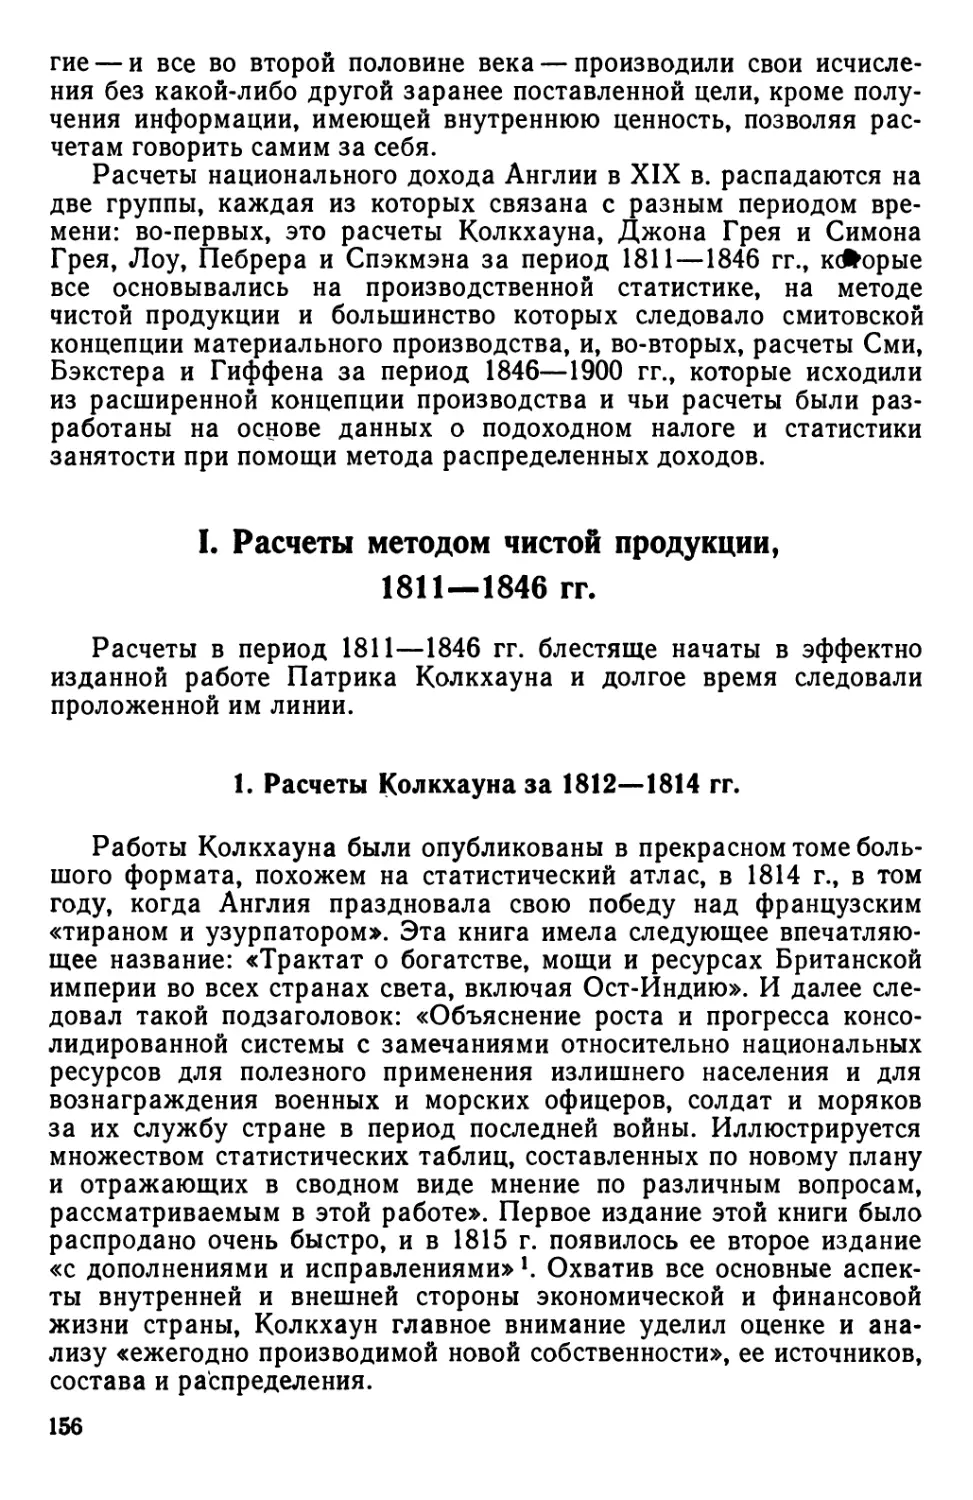 I. Расчеты методом чистой продукции, 1811—1846 гг